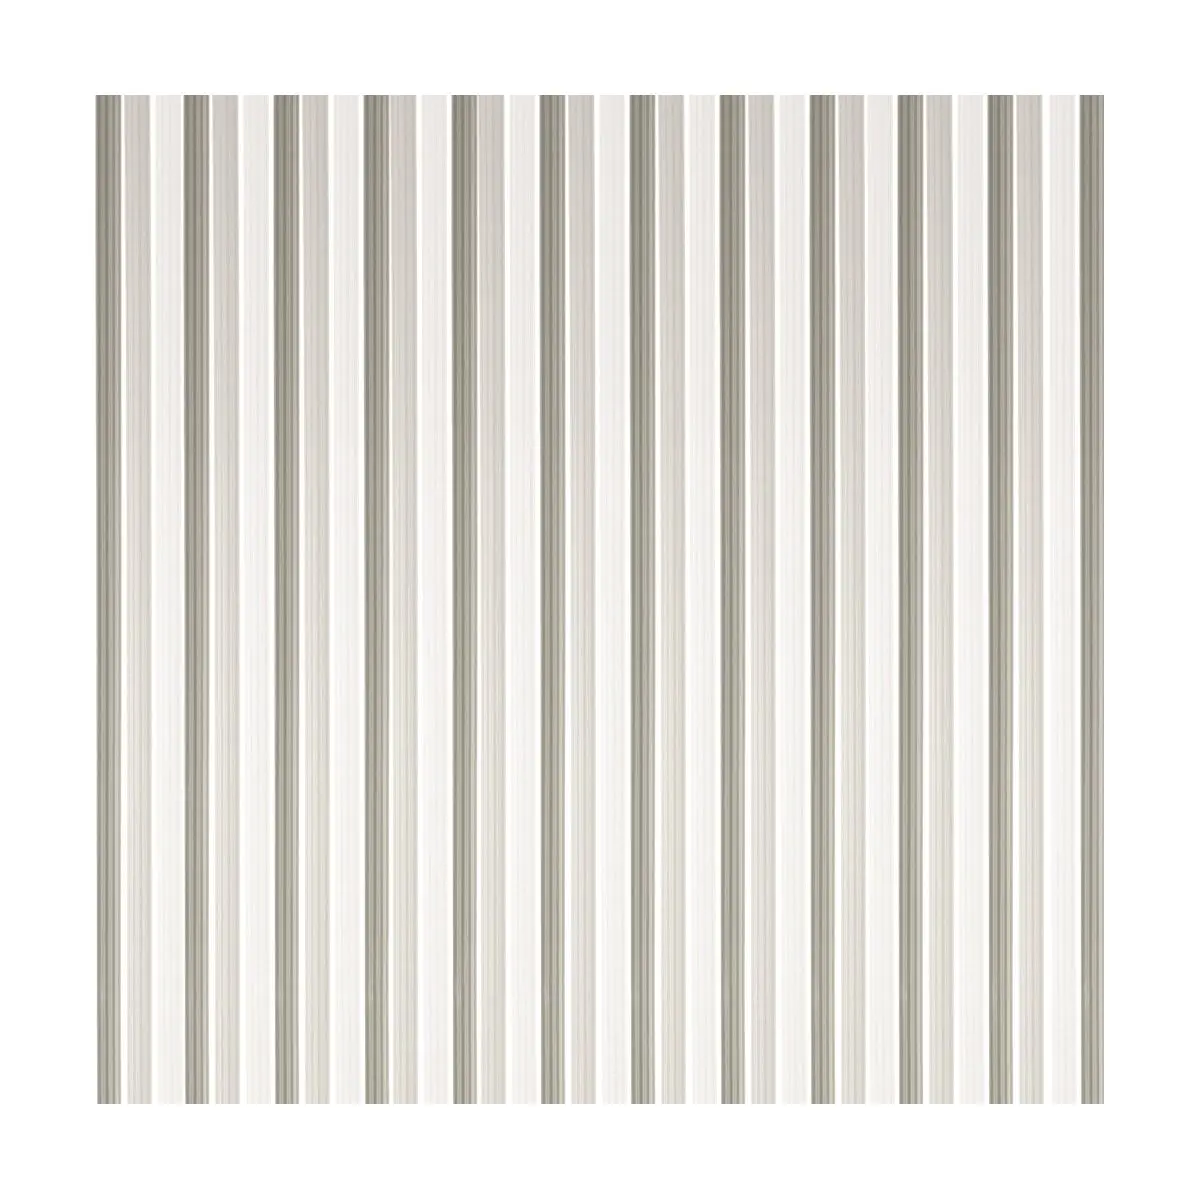 Szalagfüggöny - 90 x 200 cm, szürke, fehér